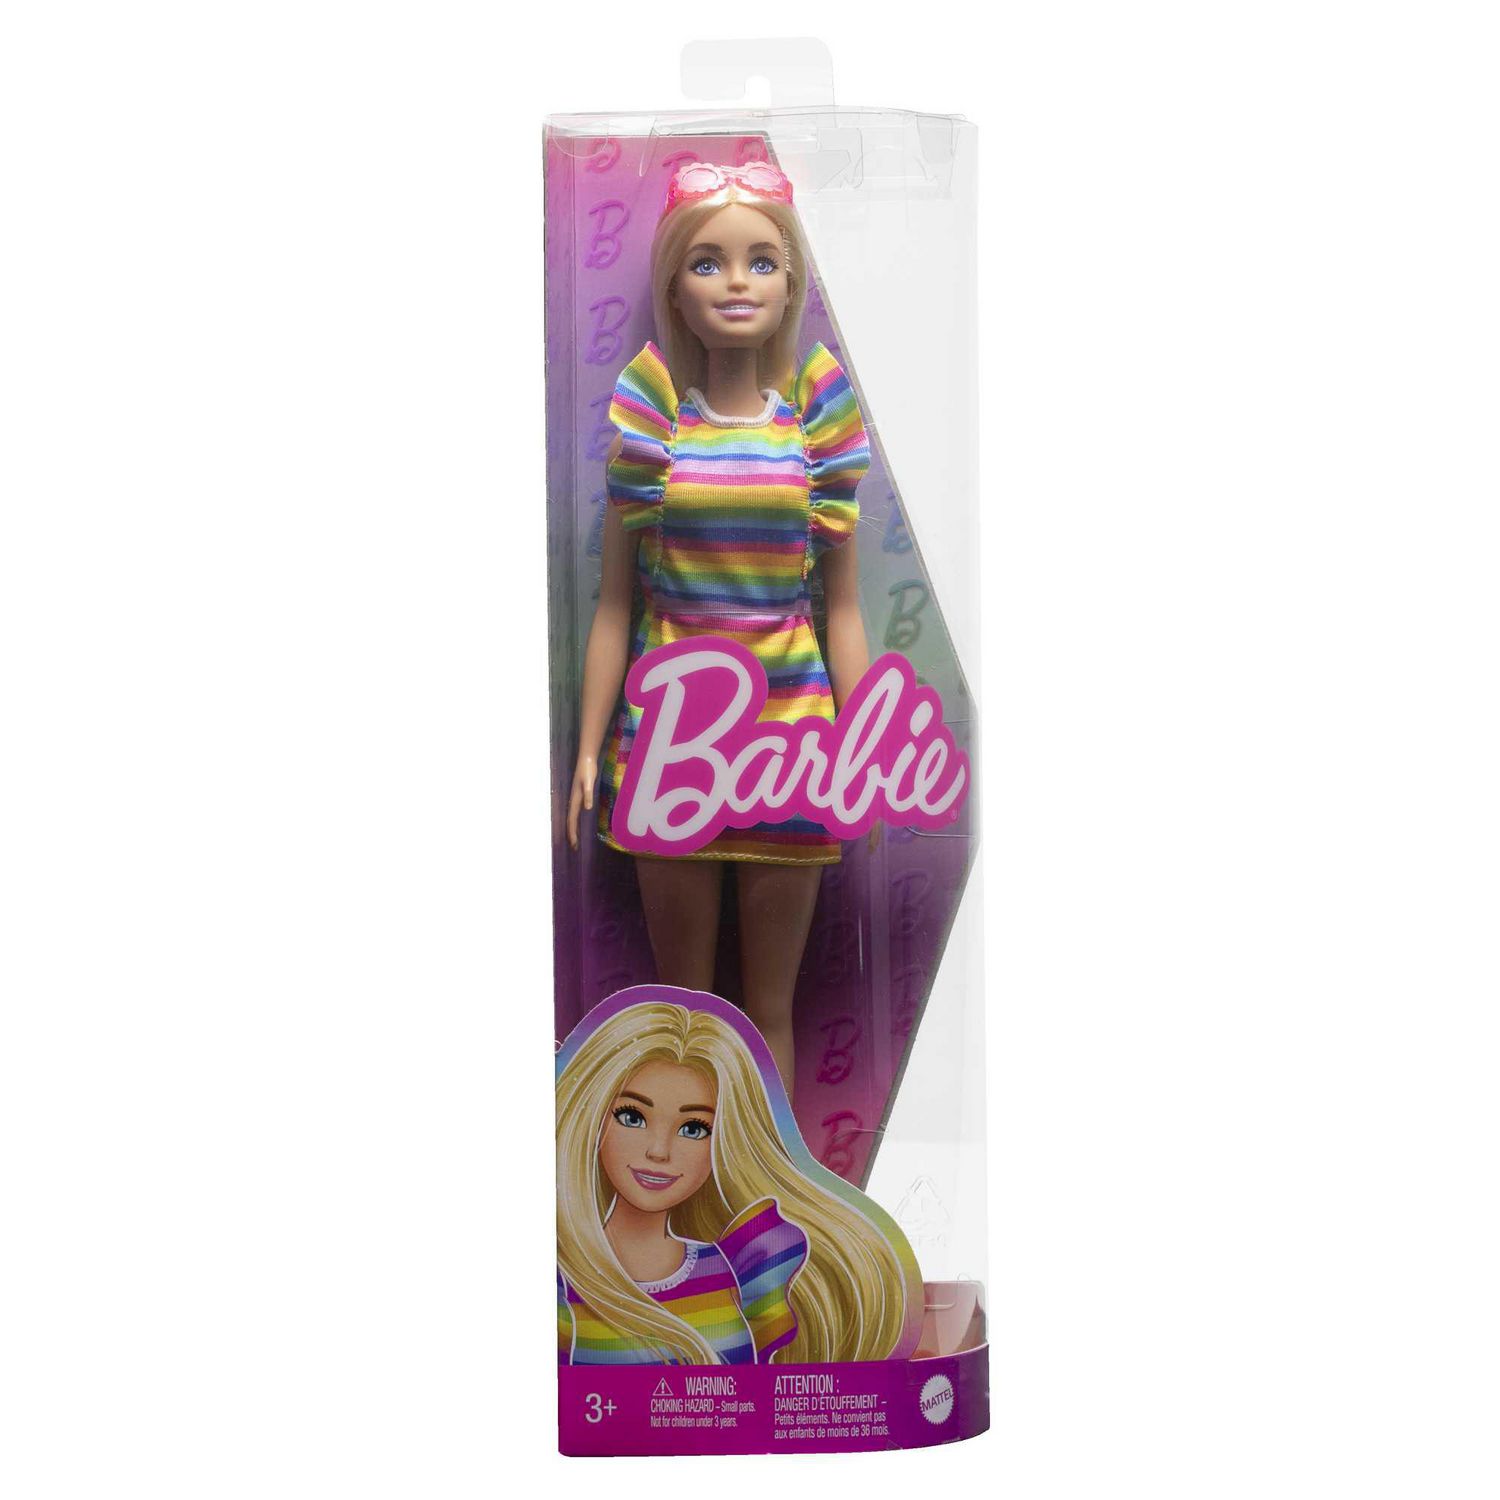 Barbie Doll with Braces and Rainbow Dress, Barbie Fashionistas